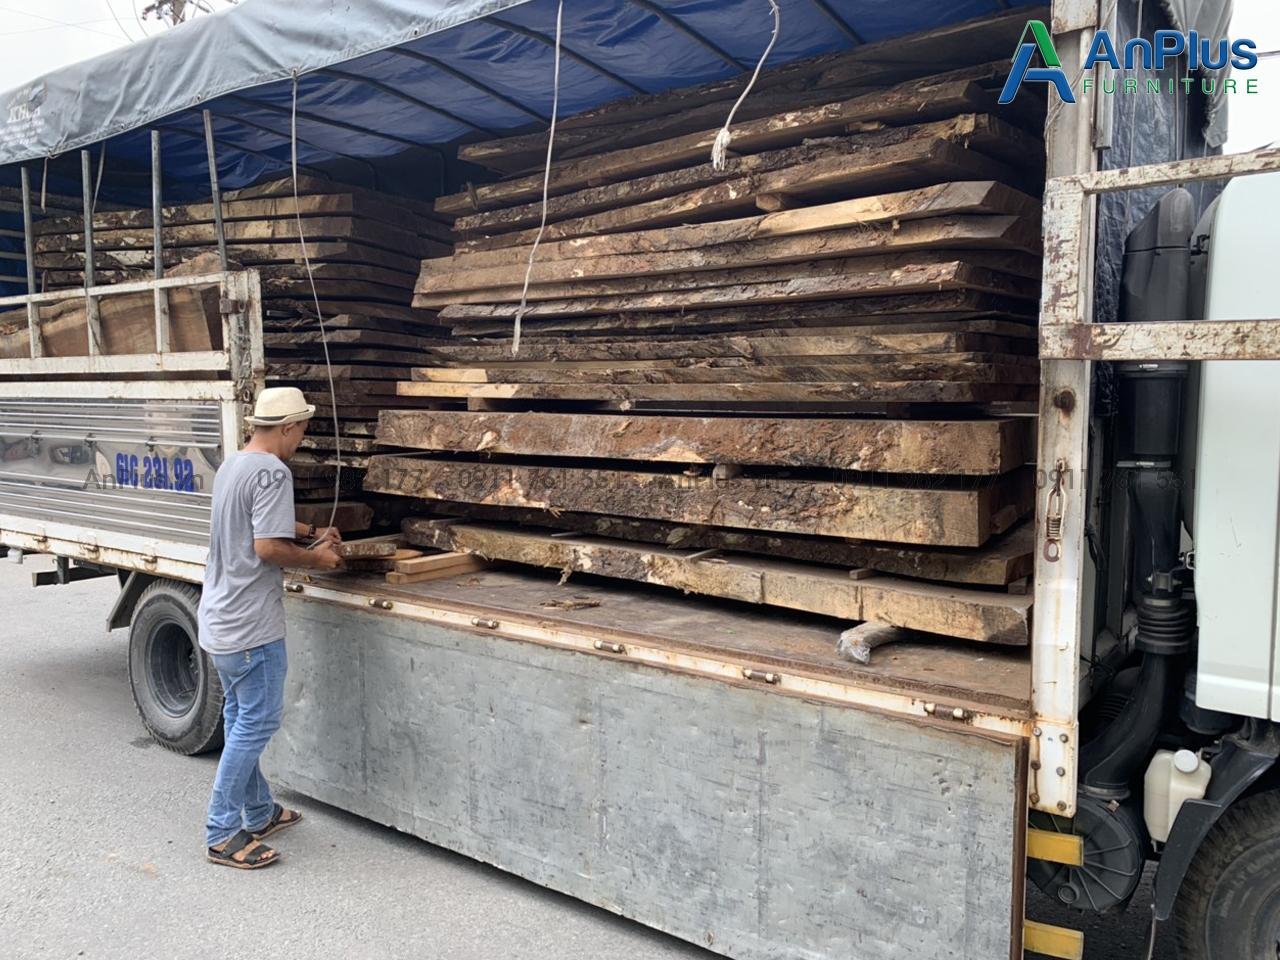 gỗ me tây nguyên tấm anplus xẻ sấy về kho